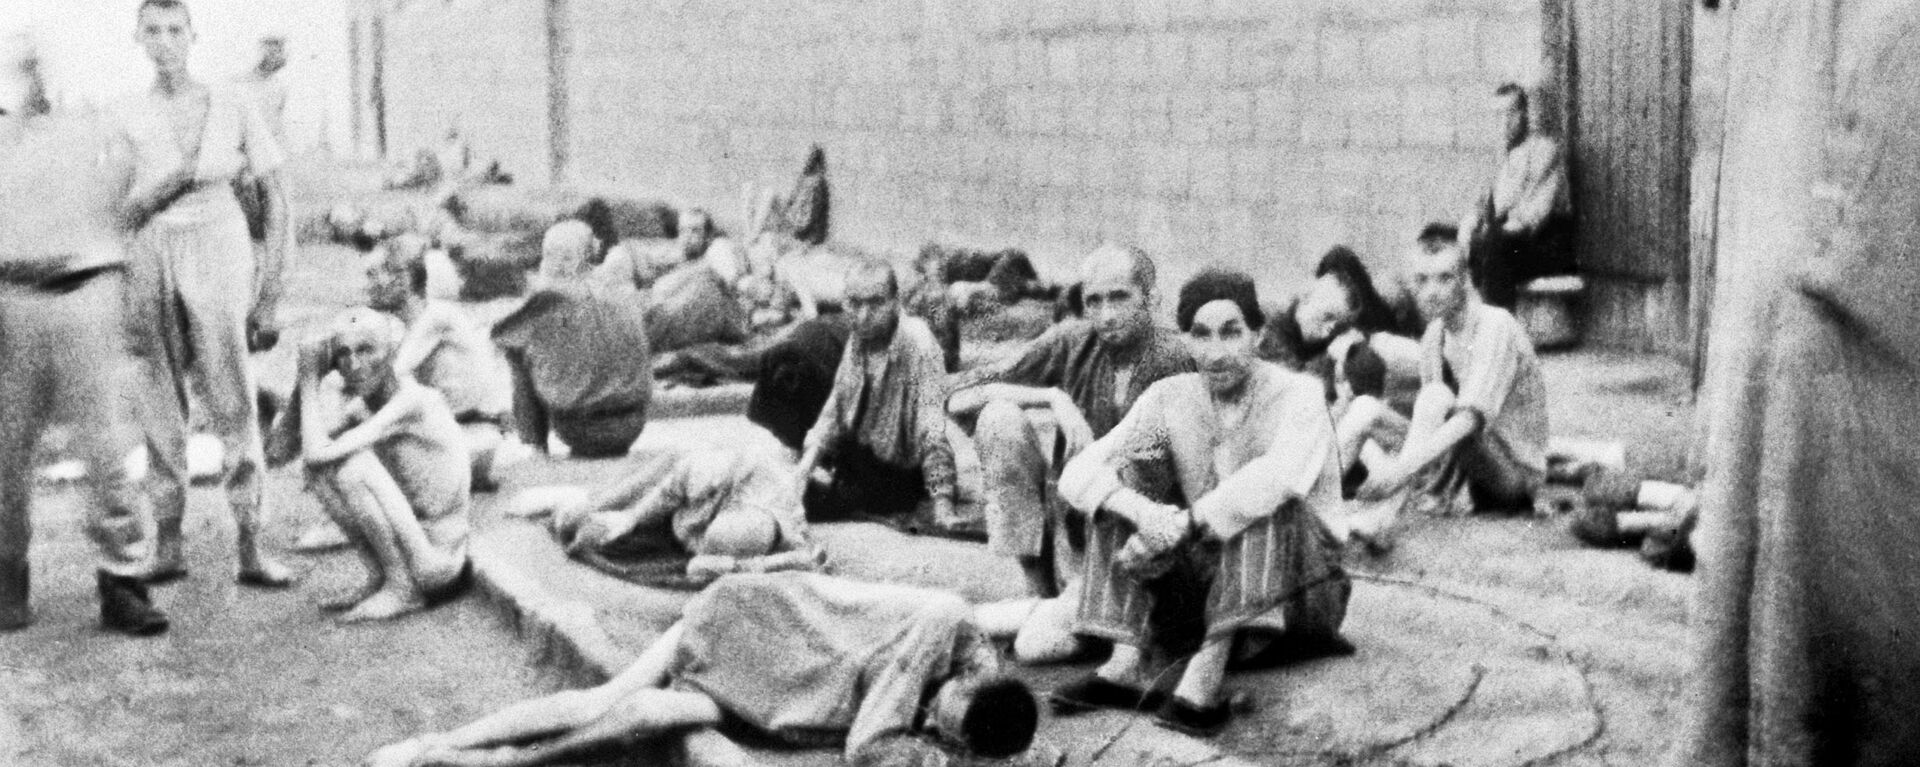 Los prisioneros del campo de concentración nazi de Mauthausen (archivo, 1945) - Sputnik Mundo, 1920, 29.06.2022